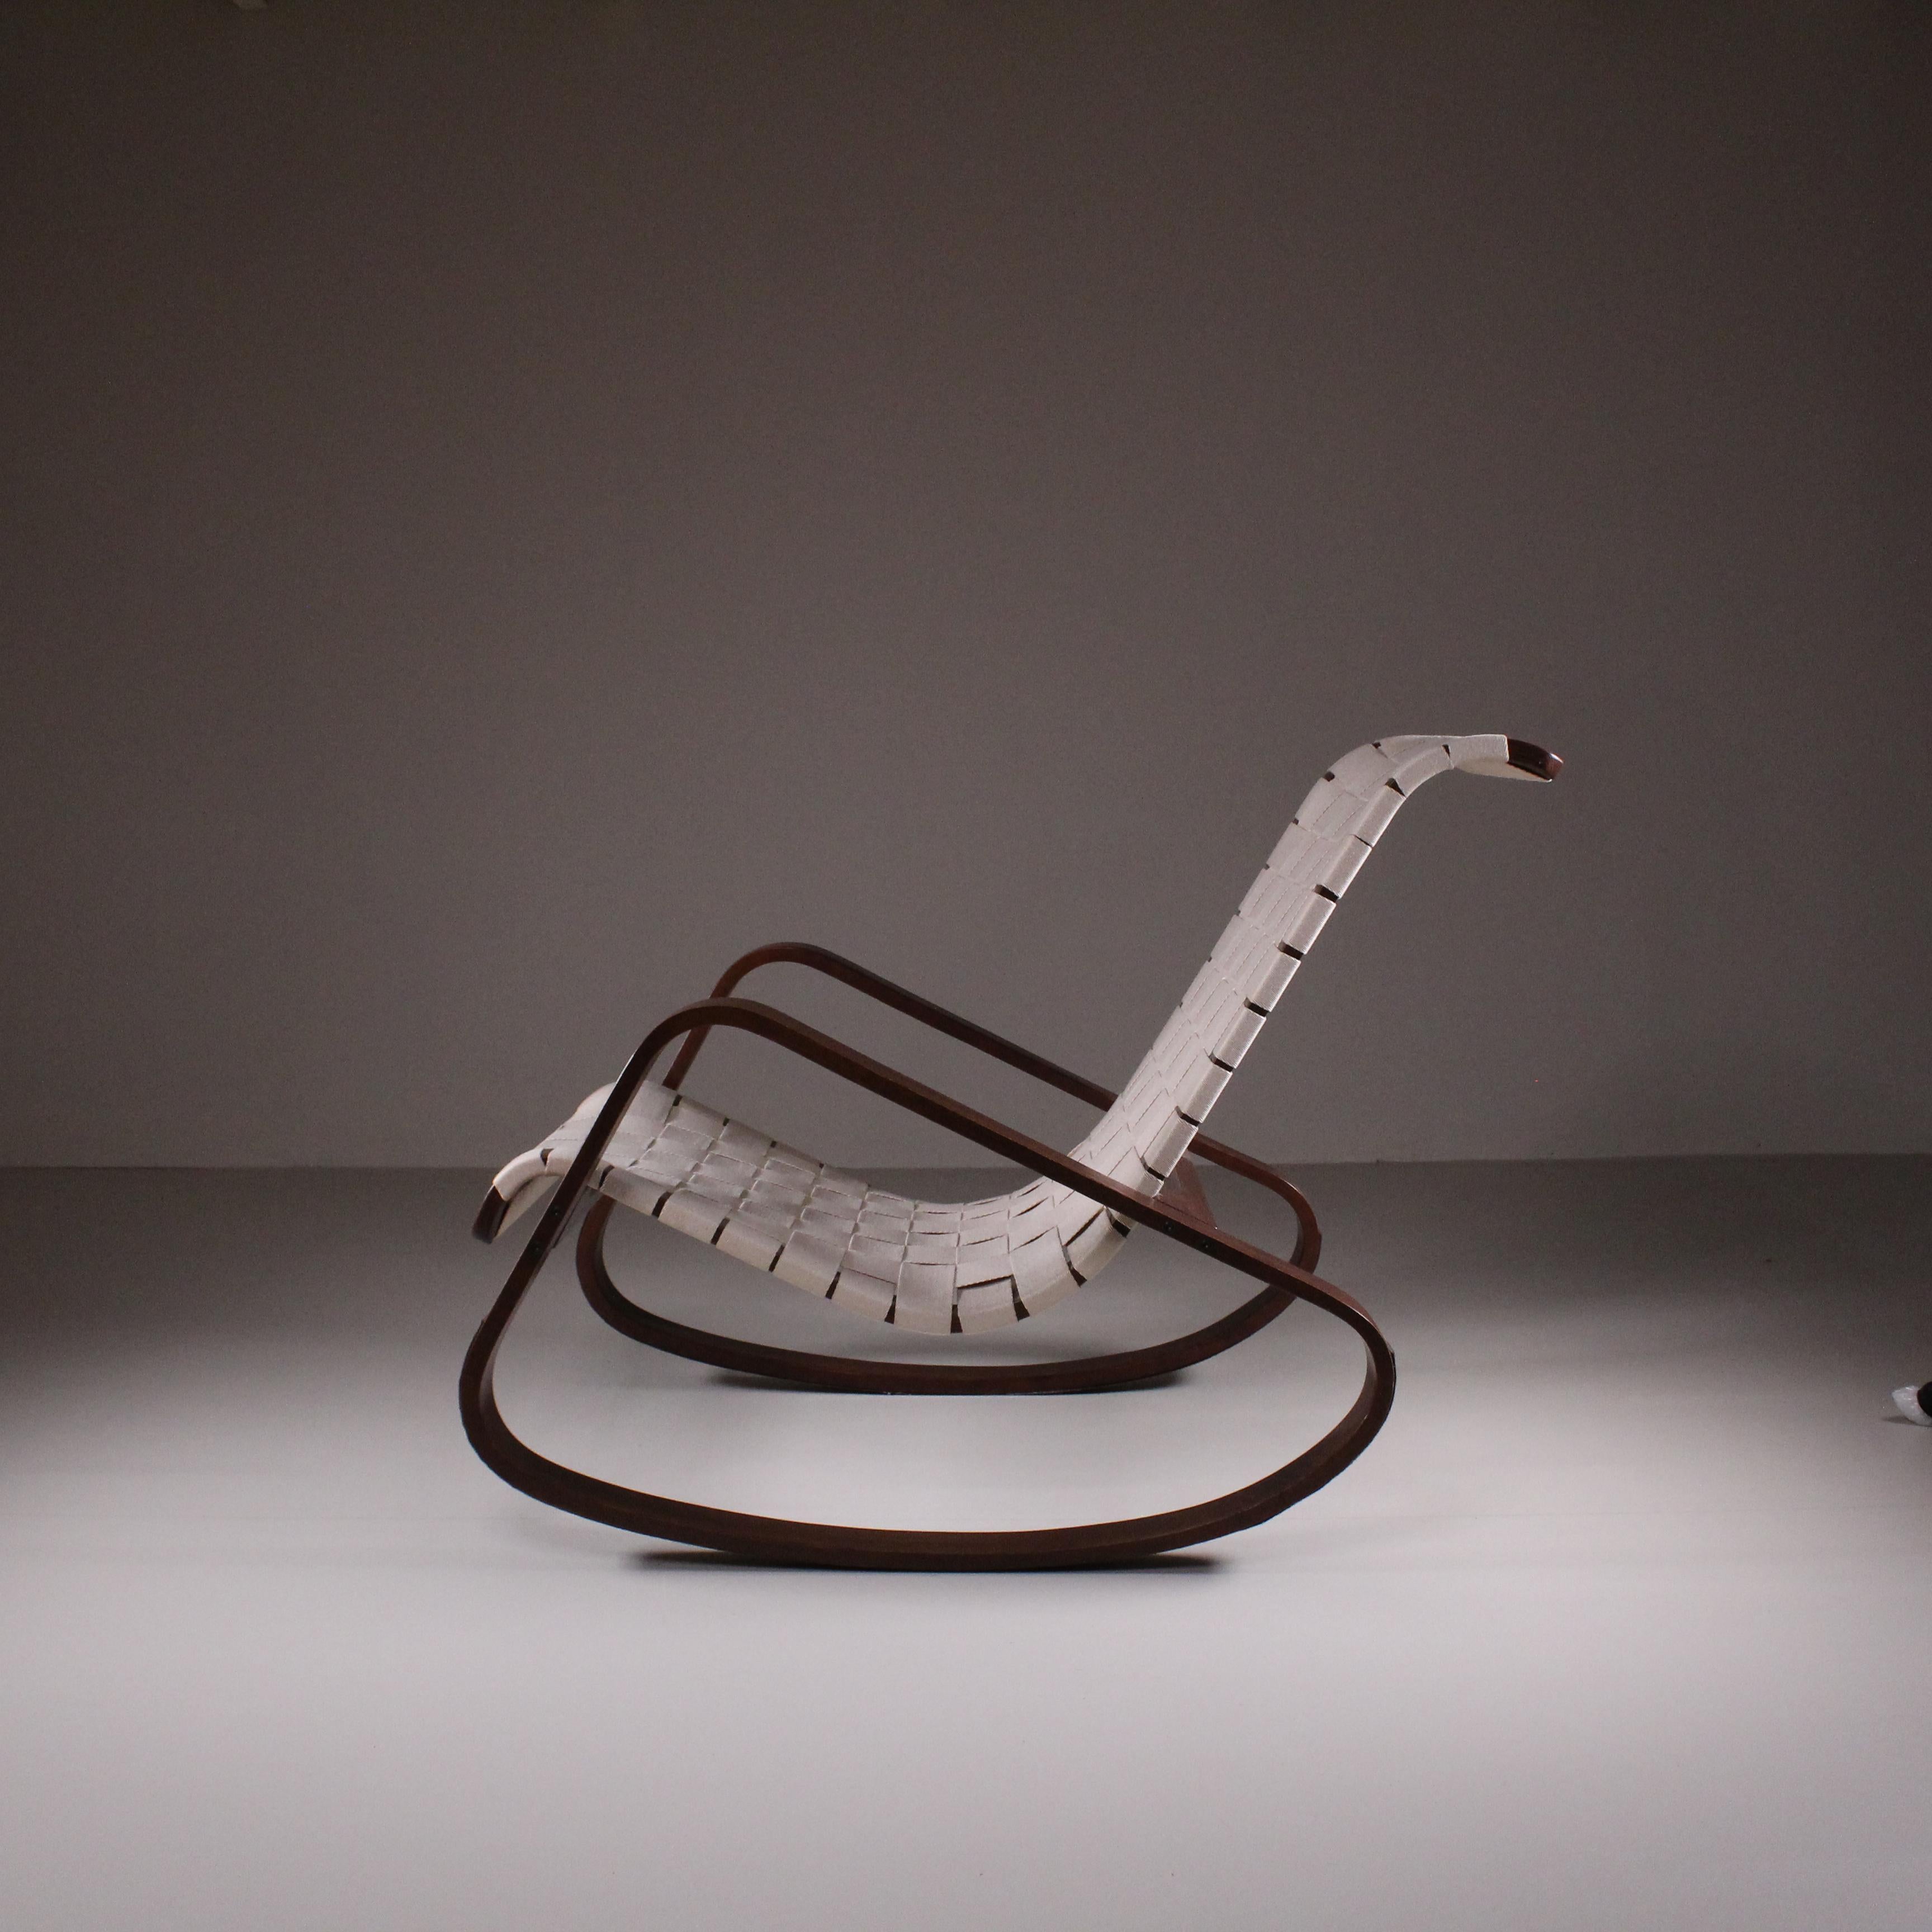 Der Schaukelstuhl von Luigi Crassevig ist eine meisterhafte Kreation, die Komfort und Handwerkskunst verkörpert. Dieser mit viel Liebe zum Detail entworfene Sessel kombiniert eine klassische Schaukelbewegung mit einer modernen Ästhetik. Die solide